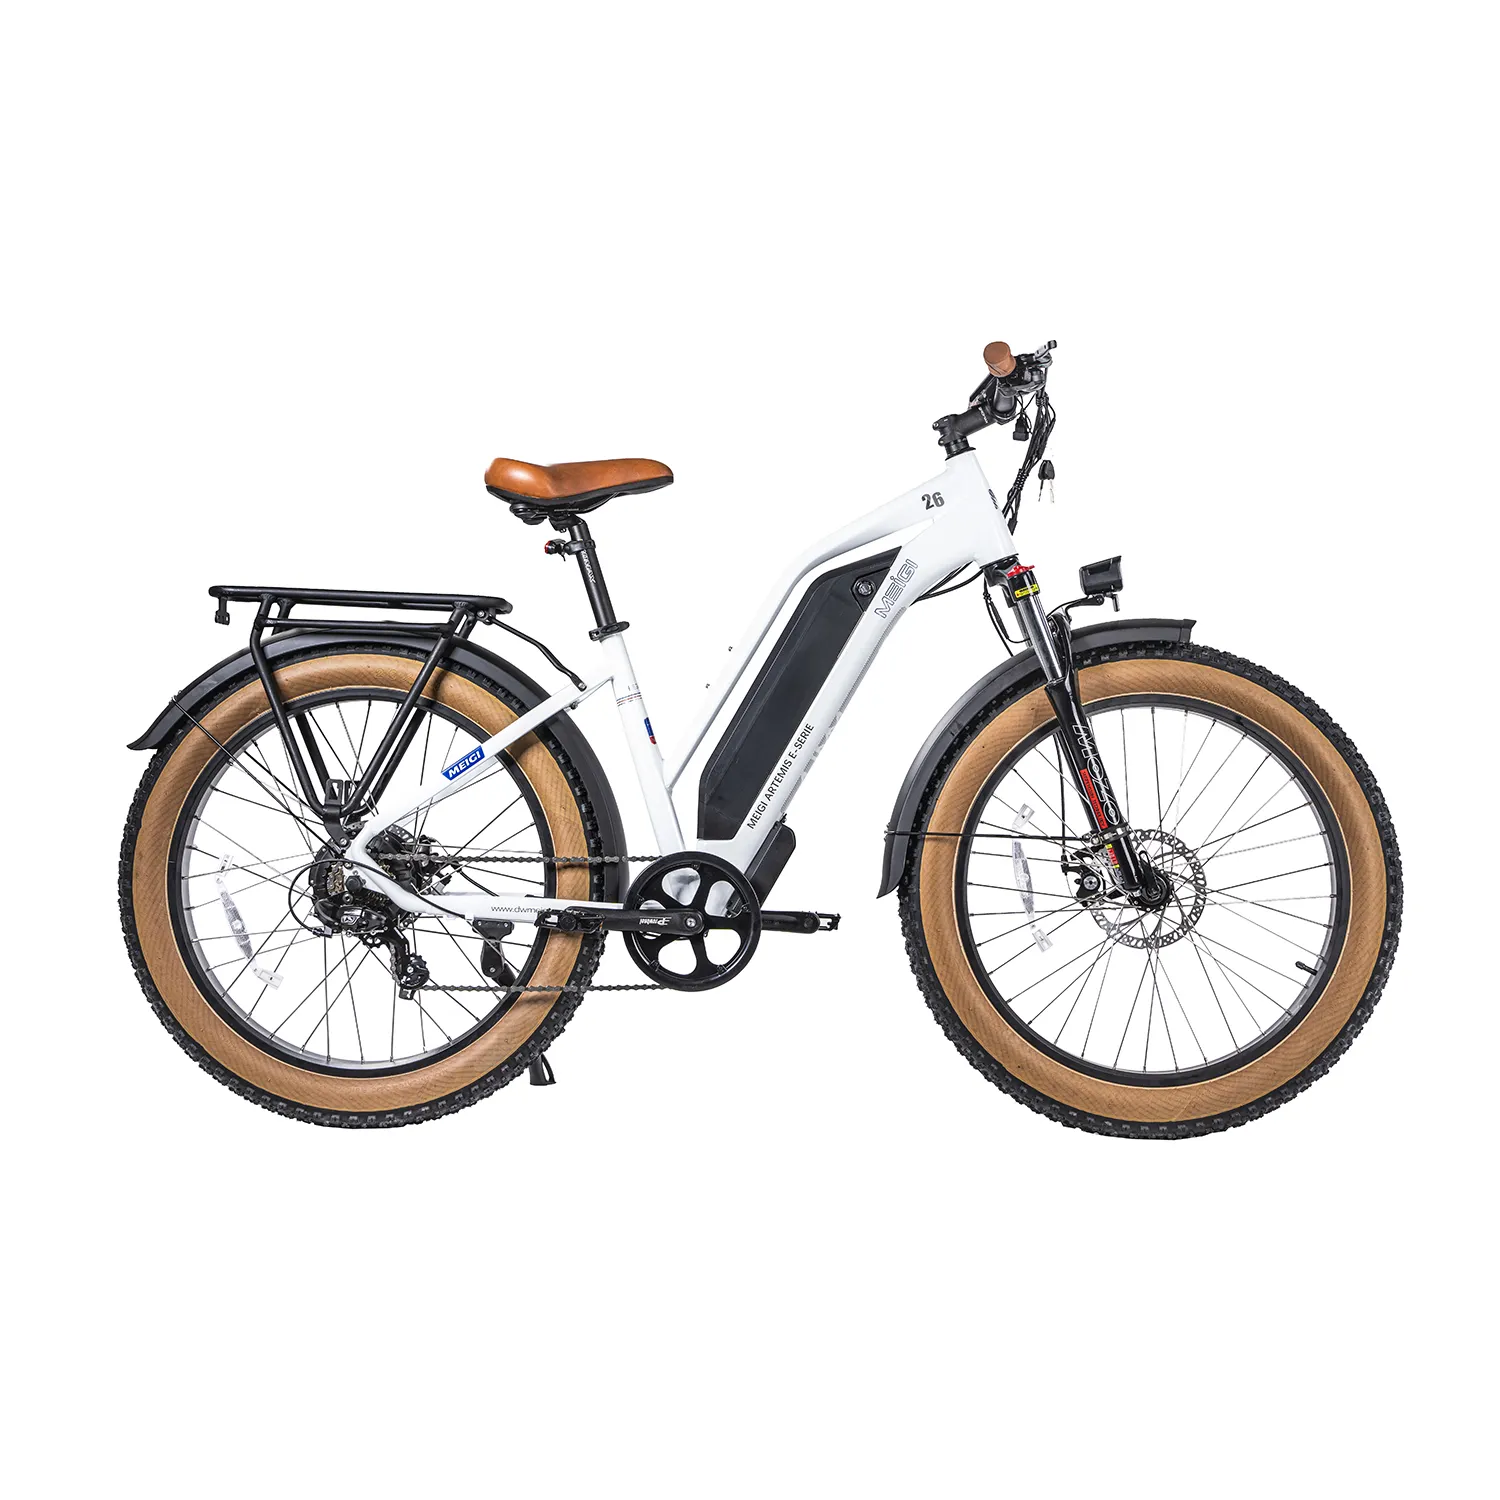 MEIGI fat tire electric bike 750w import electric mountain bike electric bike chinese factory directly shipping